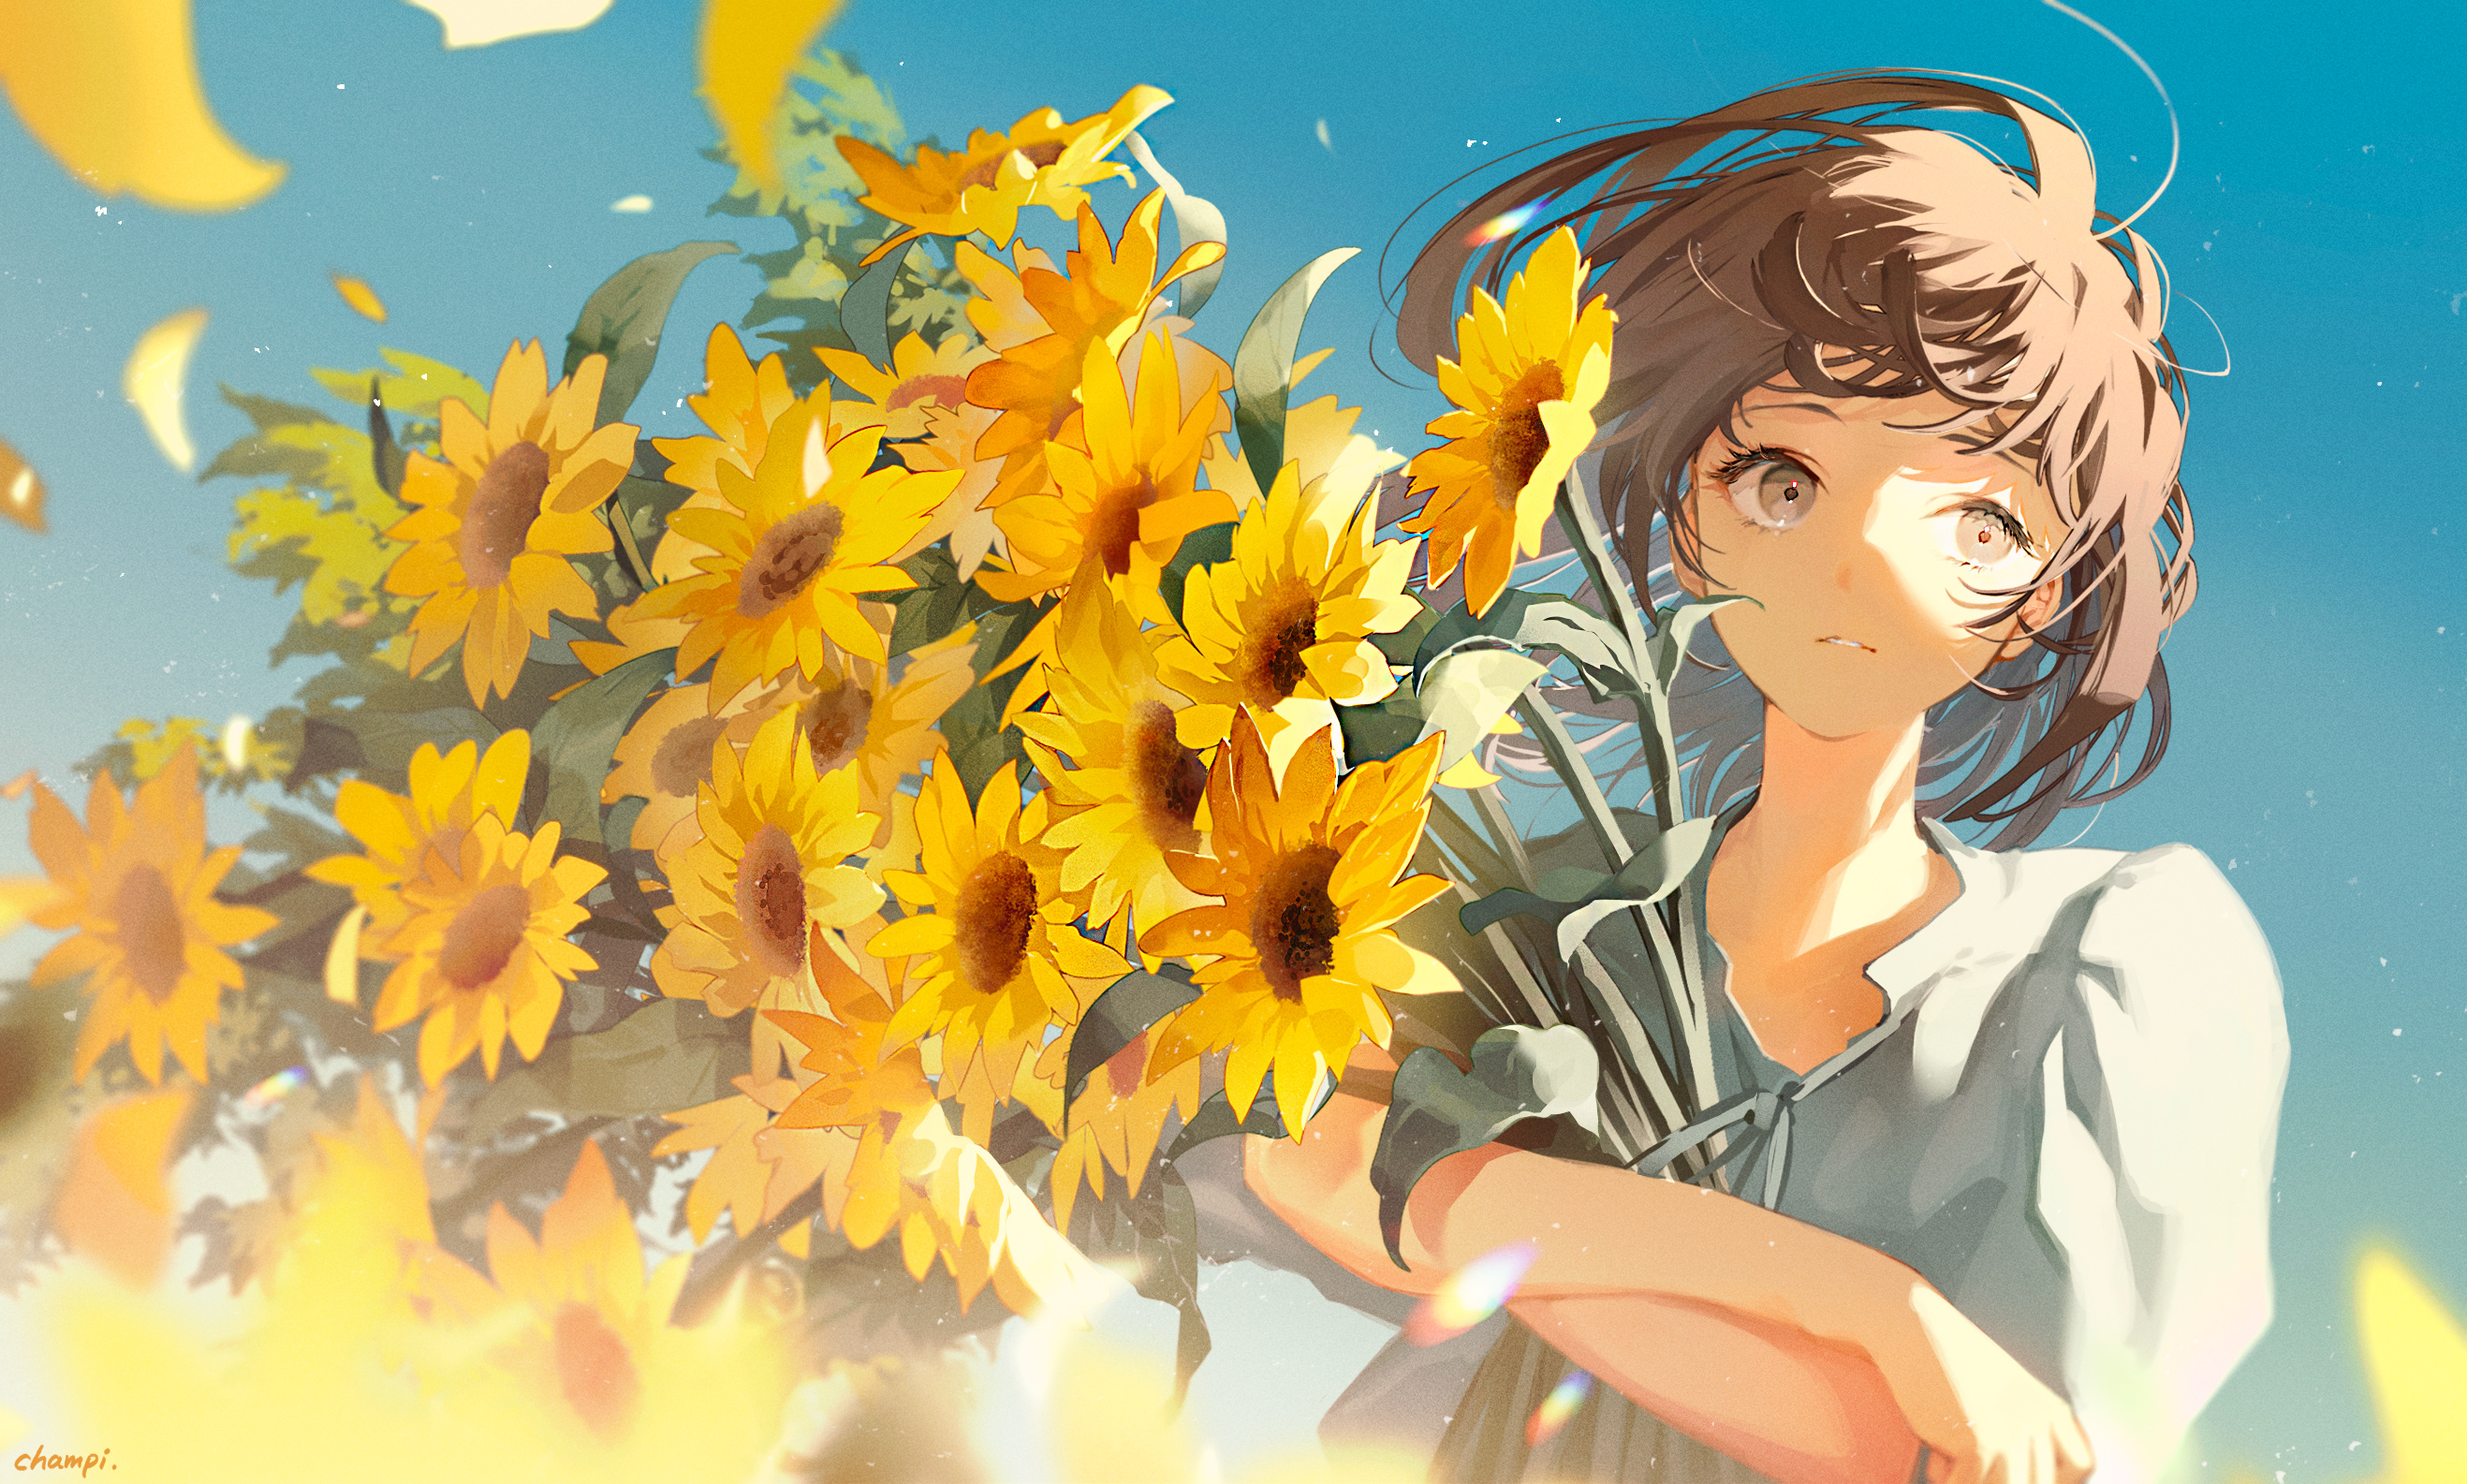 Anime 2635x1585 digital art artwork illustration women anime anime girls flowers sunflowers looking sideways brunette sunlight looking away short hair leaves champi